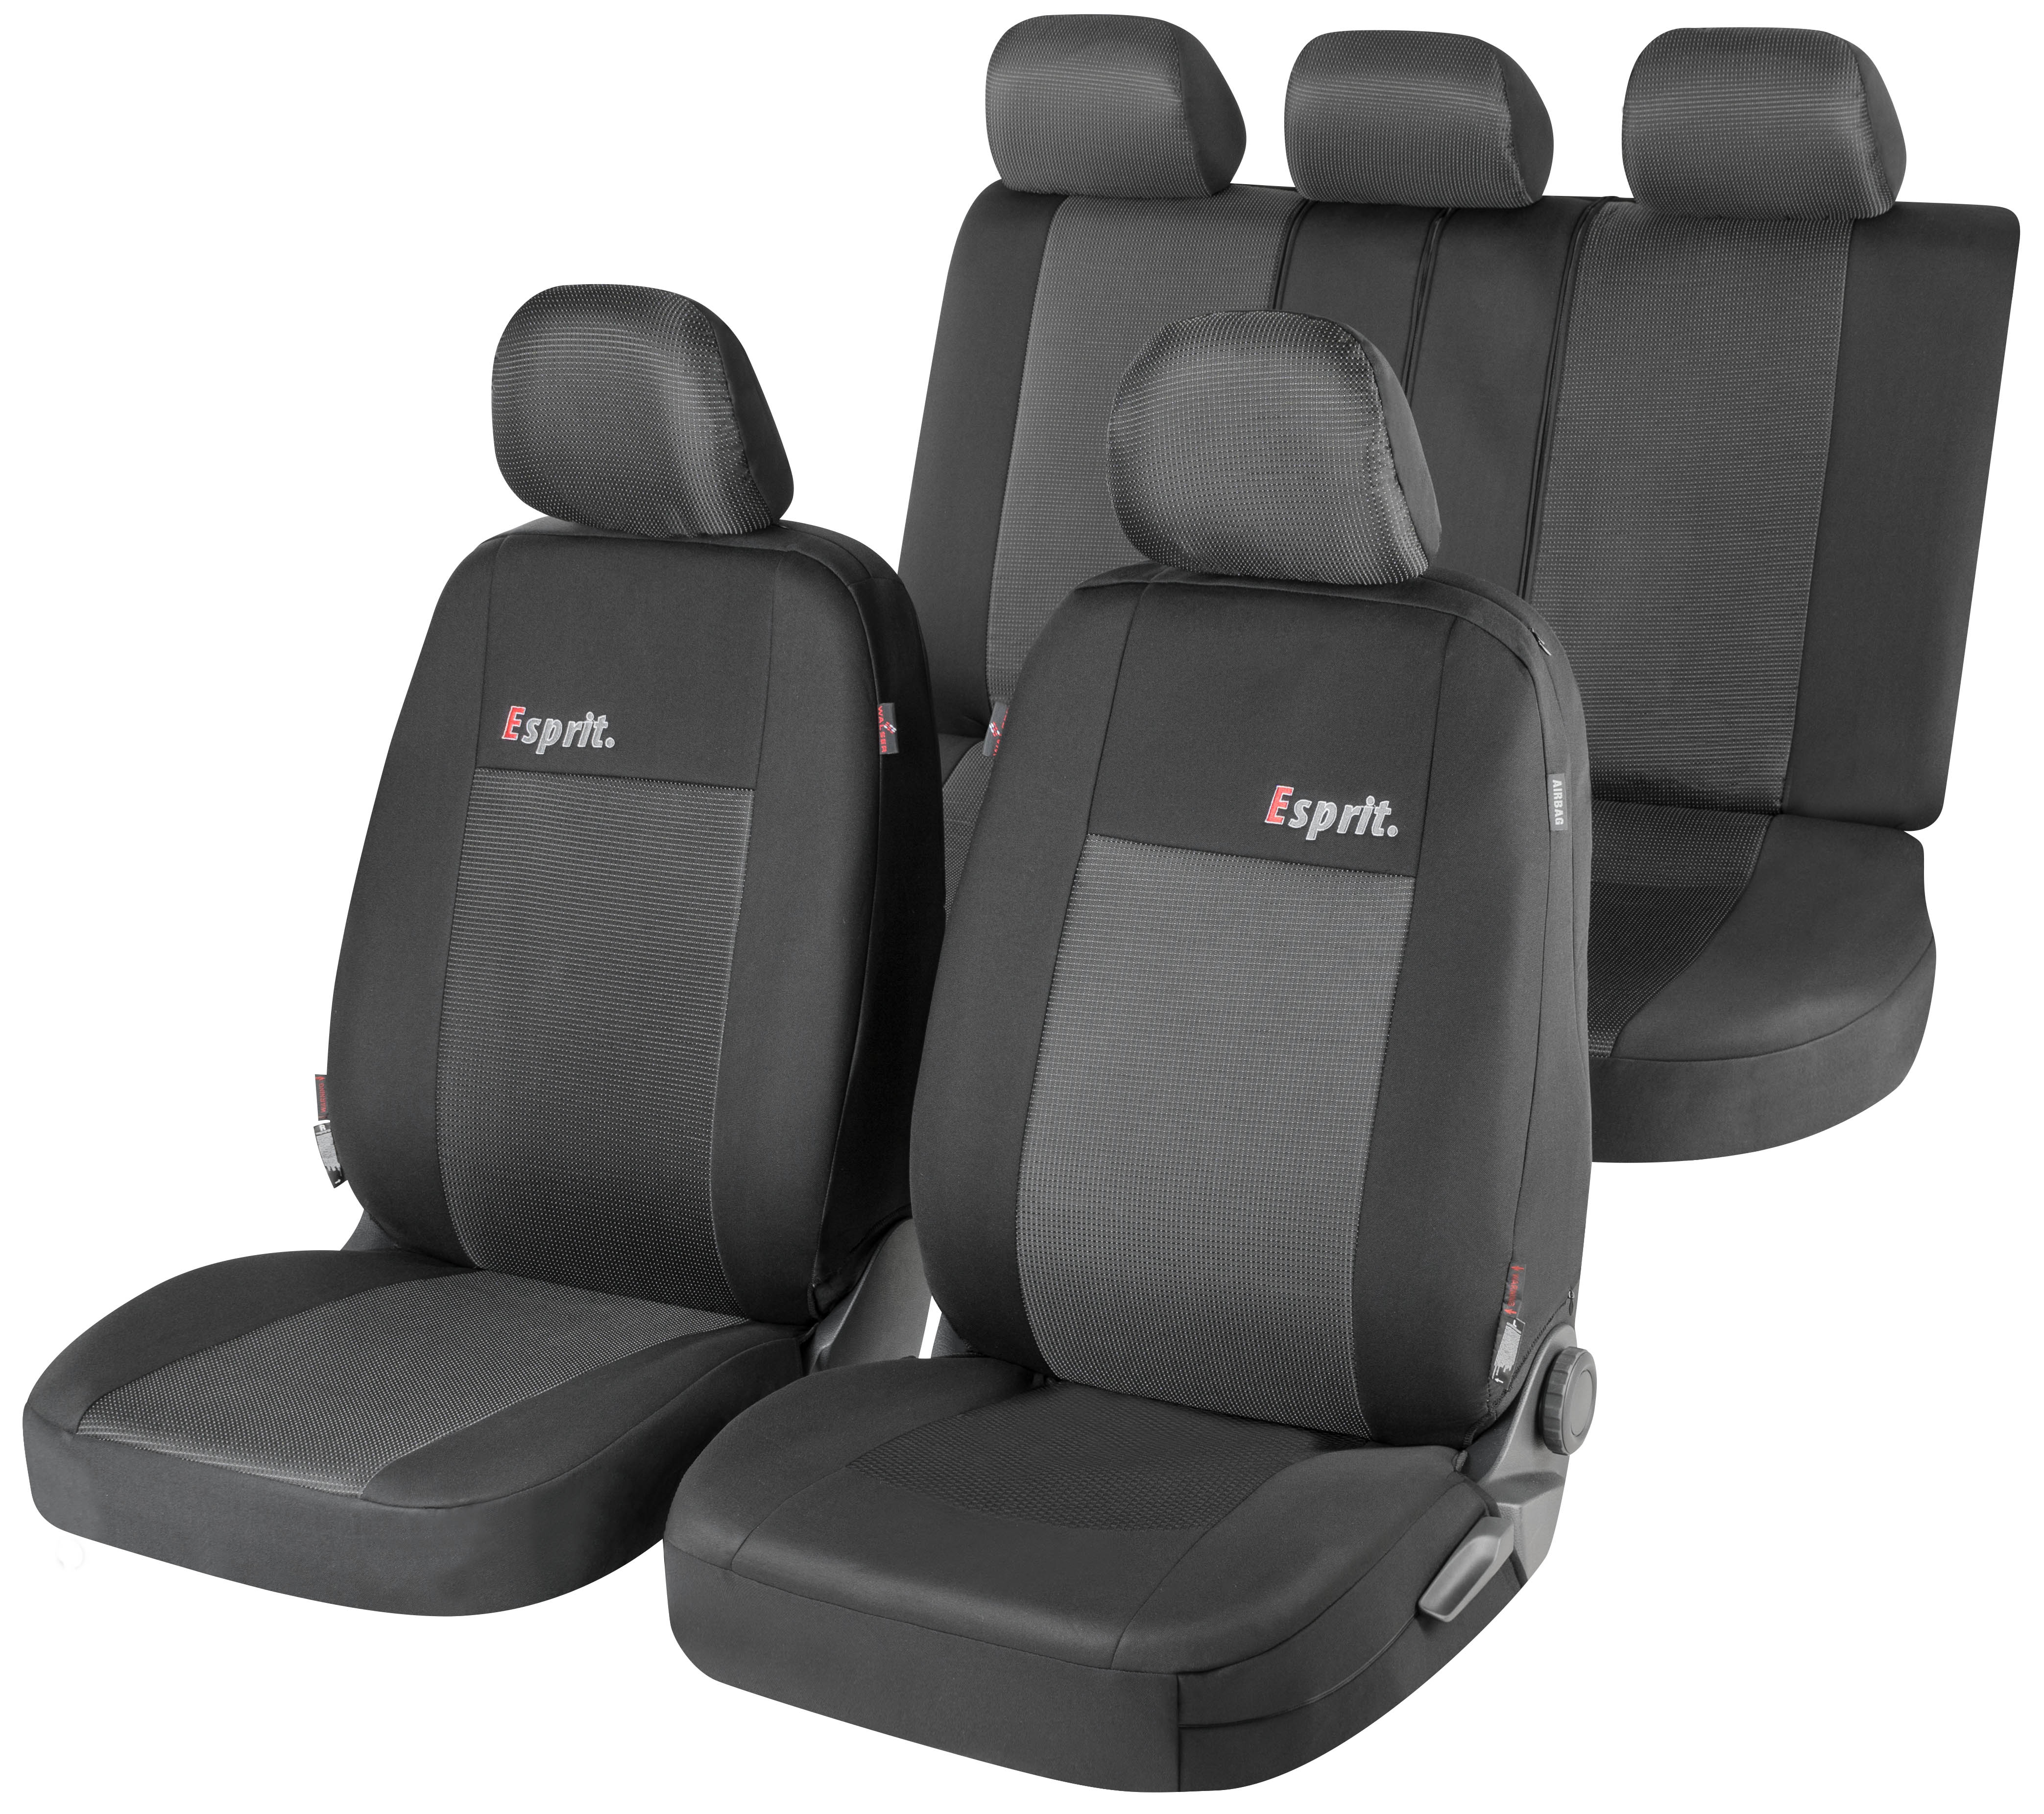 Sitzbezüge Auto für Kia Shuma (1997-2005) - Autositzbezüge Universal  Schonbezüge für Autositze - Auto-Dekor - Modern - MP-1 (schwarz) MP-1 ( schwarz)